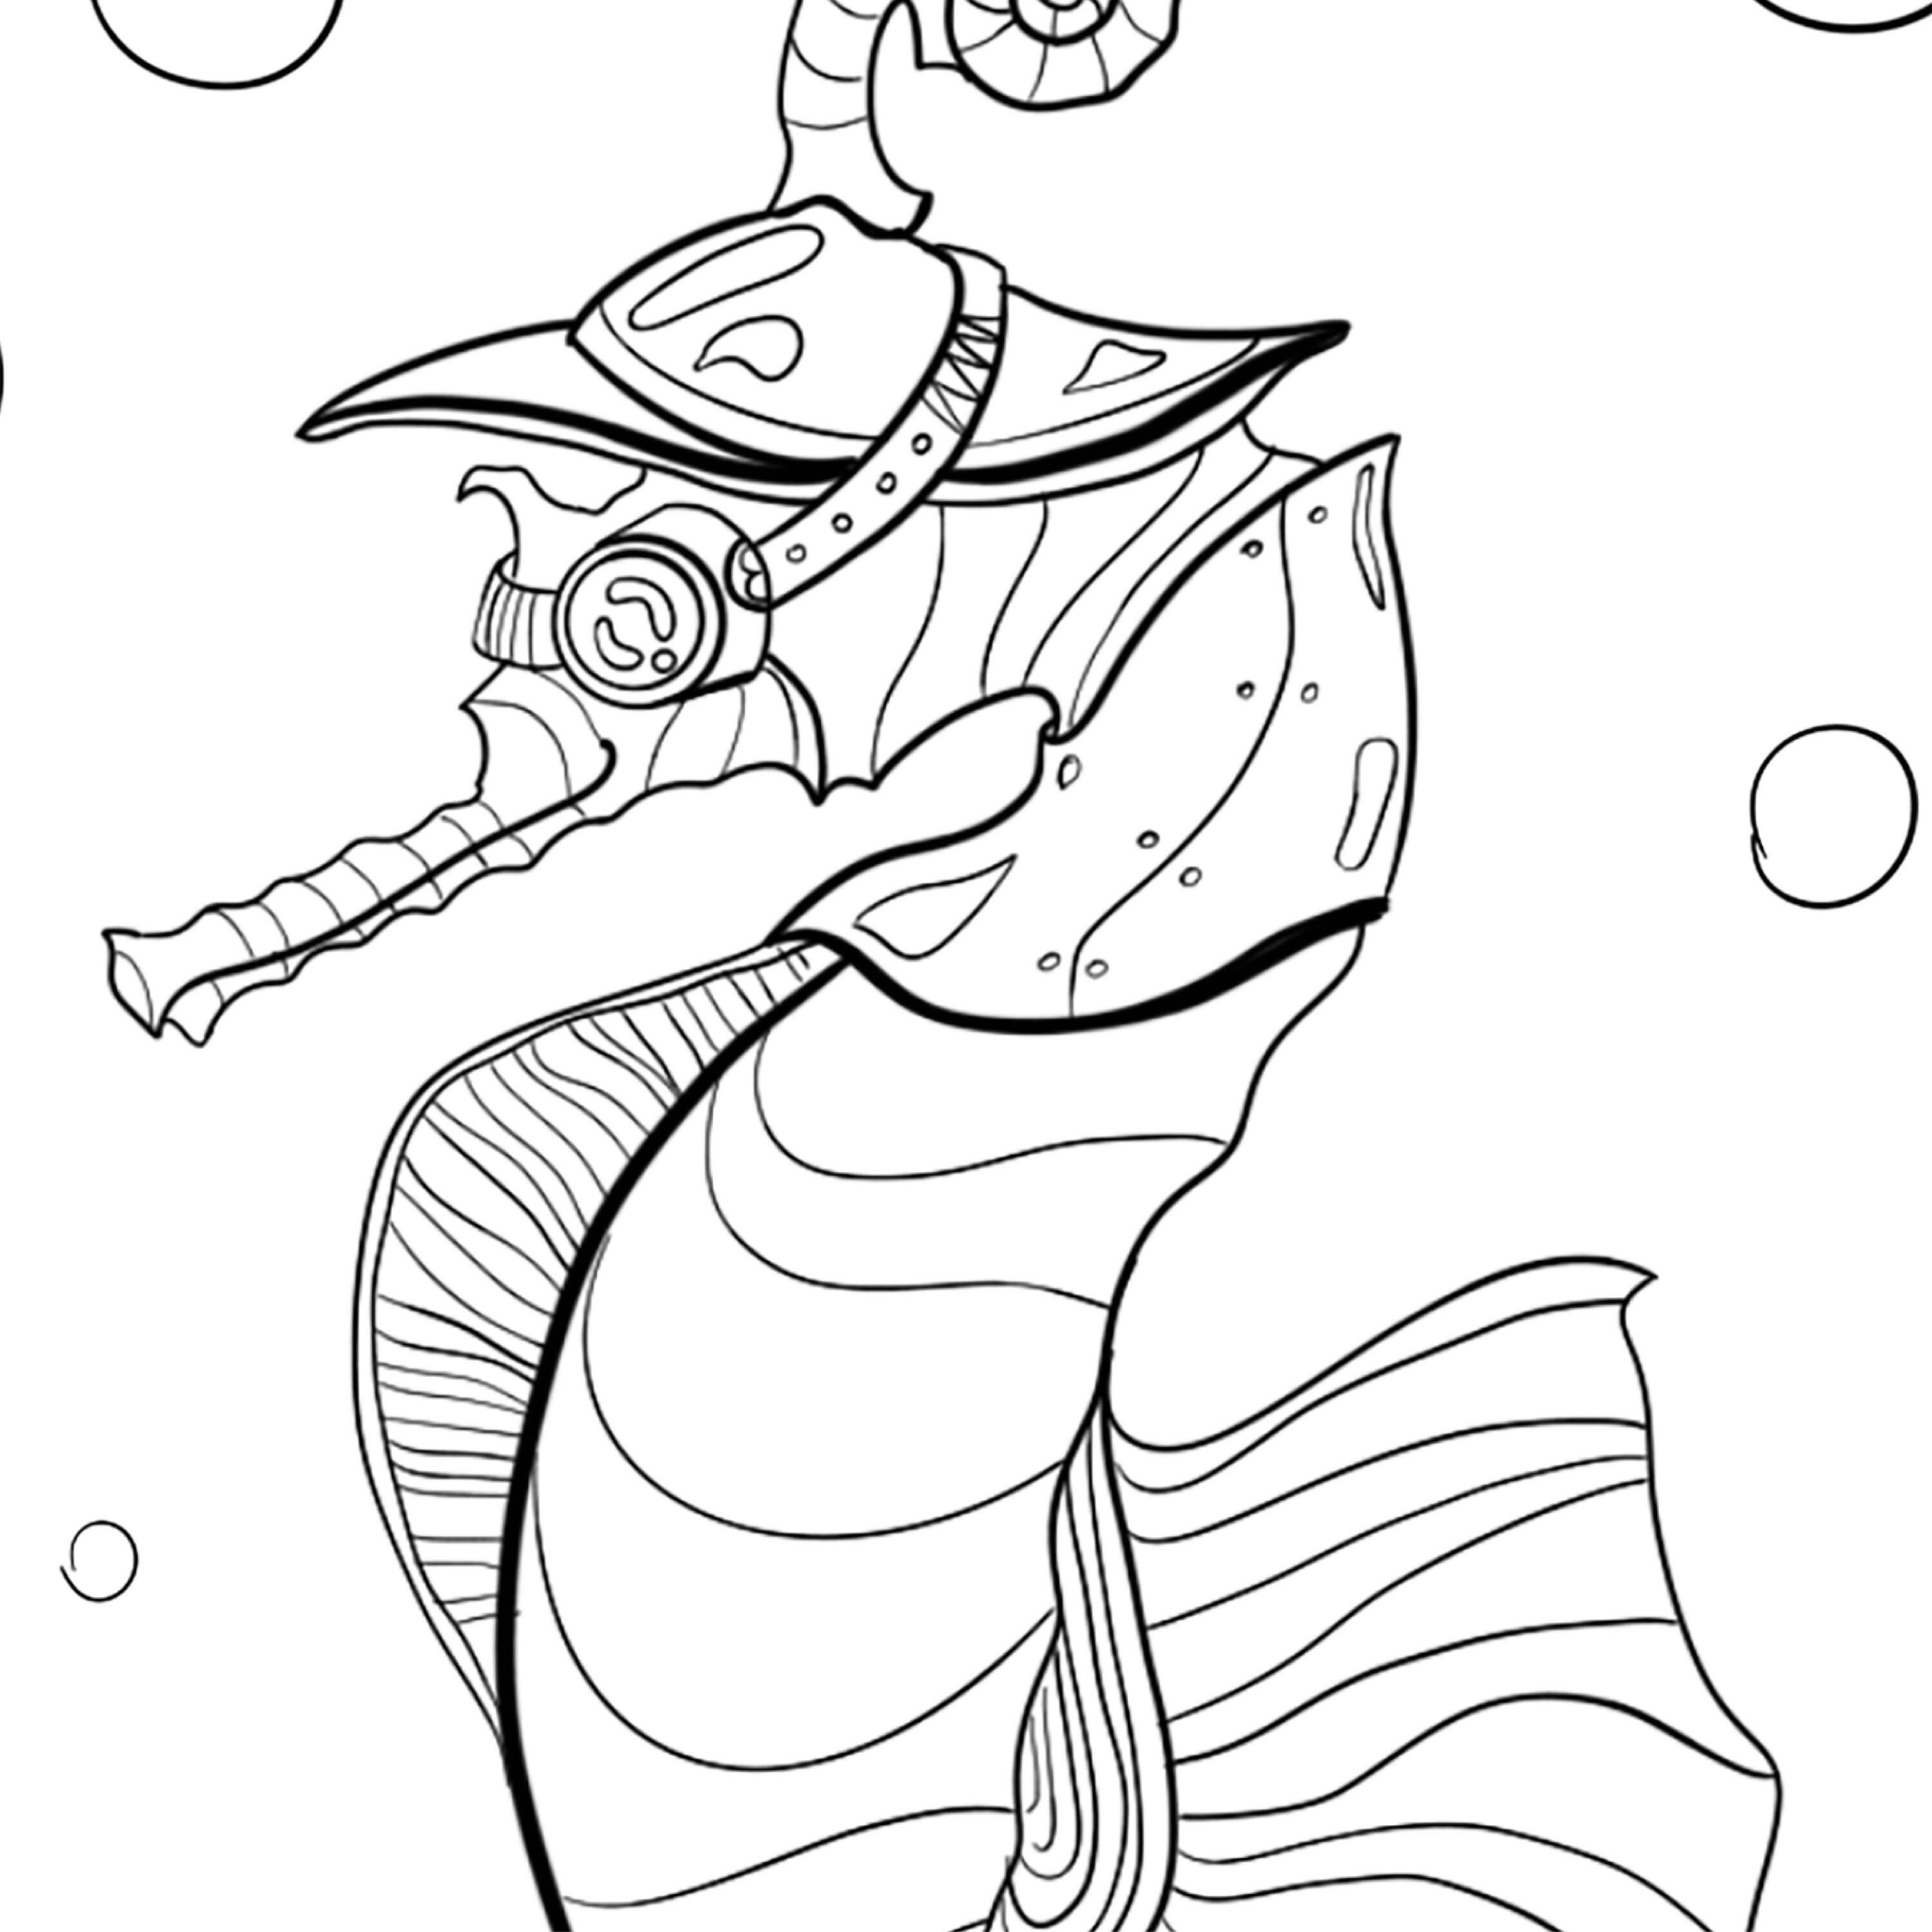 Printable Sea horse coloring page. Digital sea art coloring | Etsy